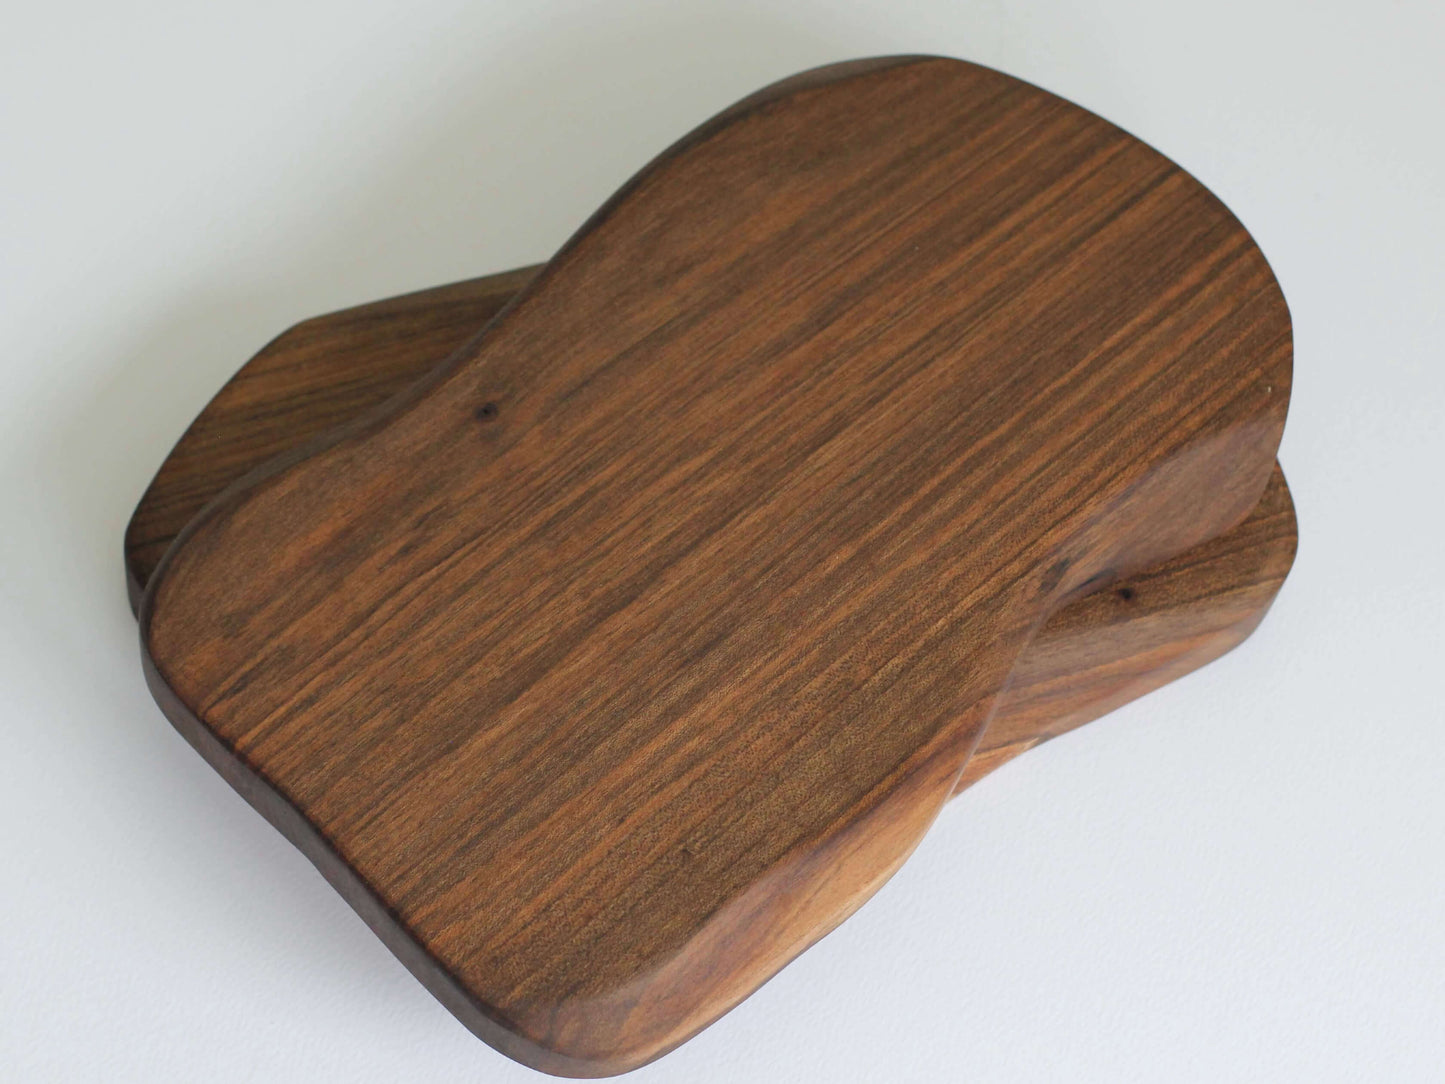 Platou din lemn de nuc cu formă organică